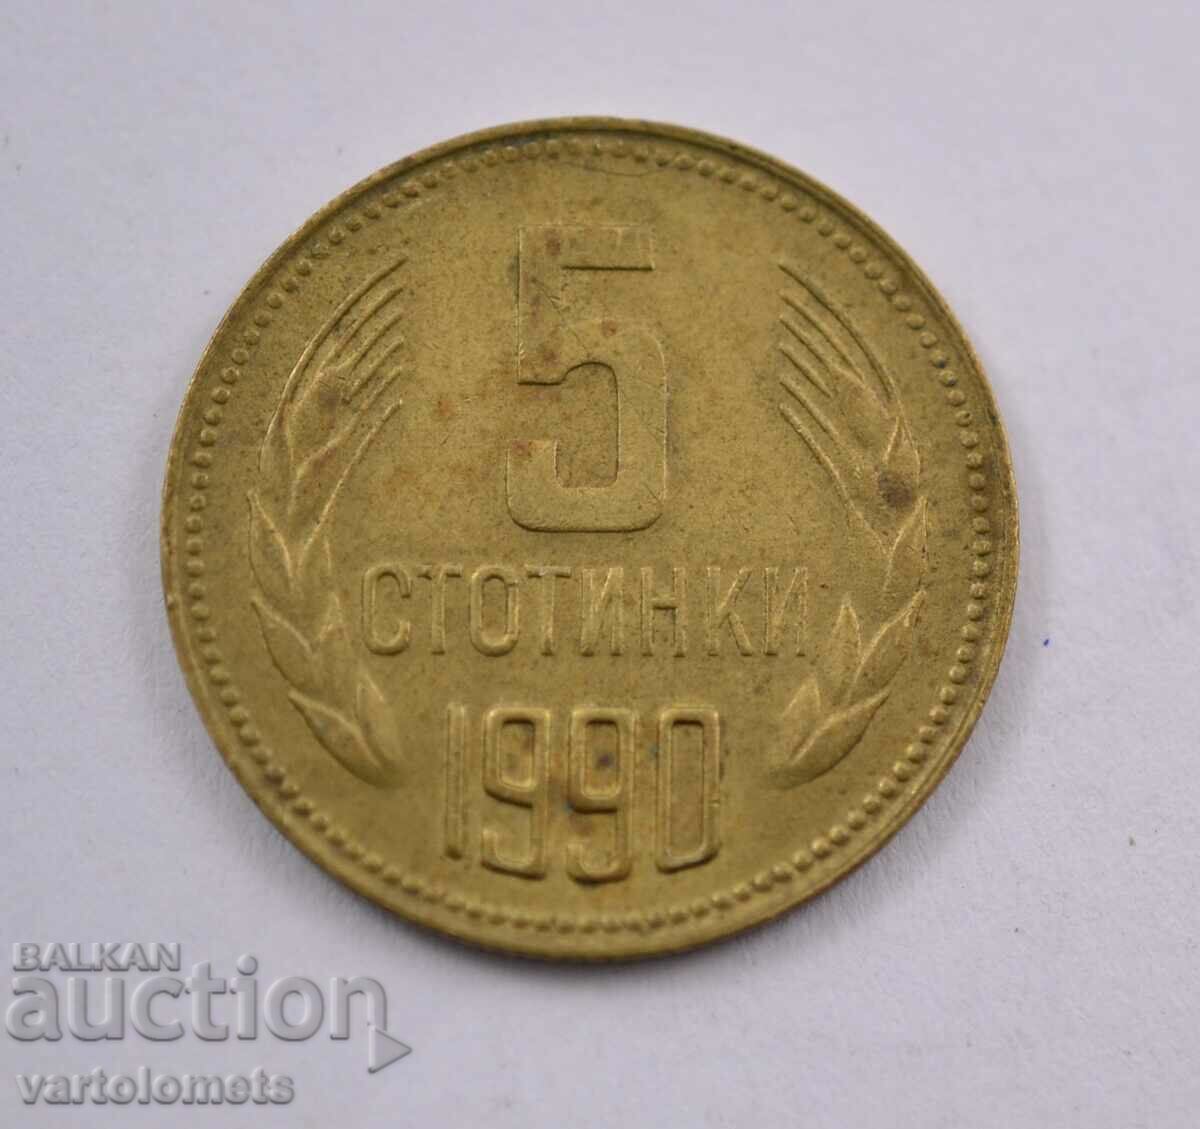 5 cenți 1990 - Bulgaria